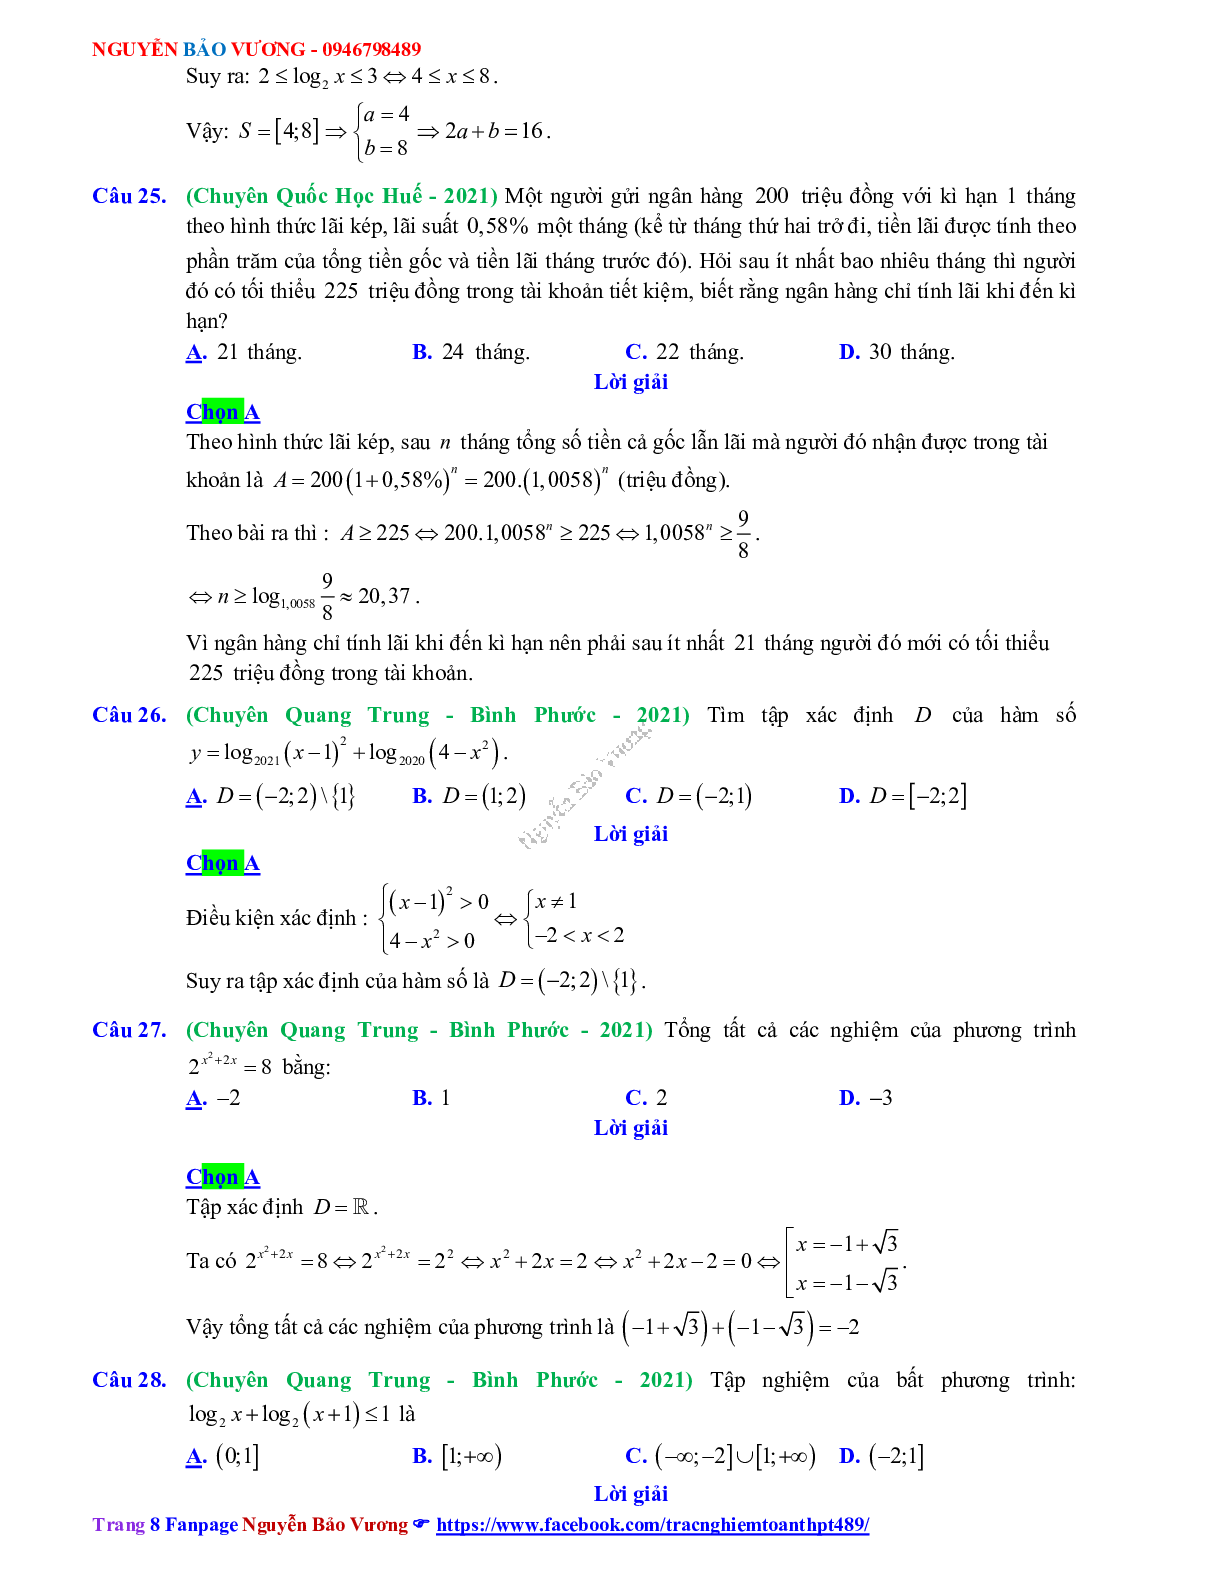 Trắc nghiệm Ôn thi THPT QG Toán 12: Đáp án mũ - lũy thừa - logarit mức độ thông hiểu (trang 8)